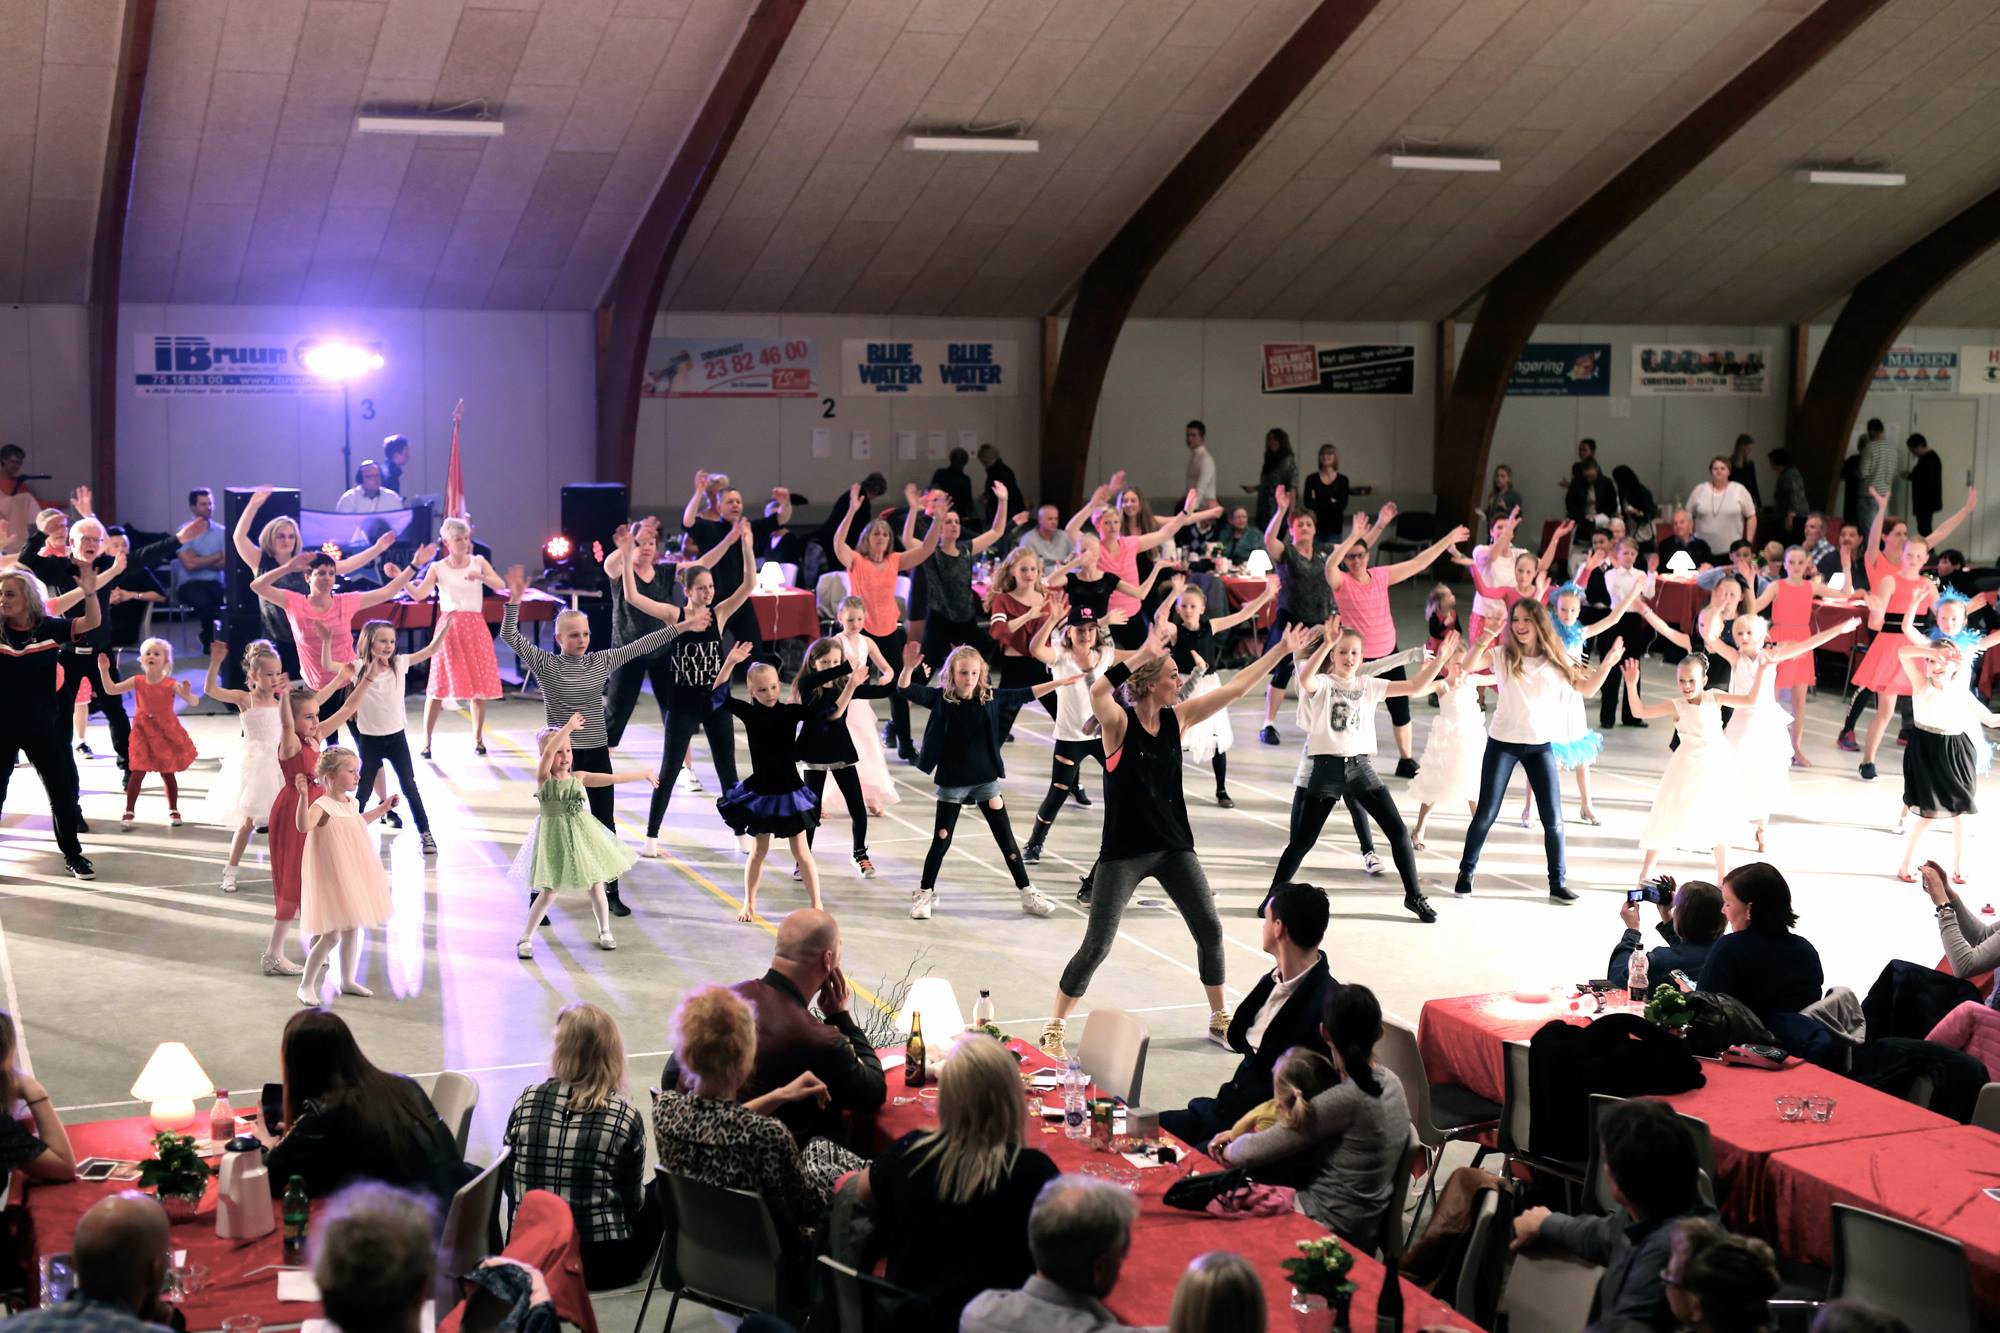 Brudevals & dans til polterabend danseskole i | Book